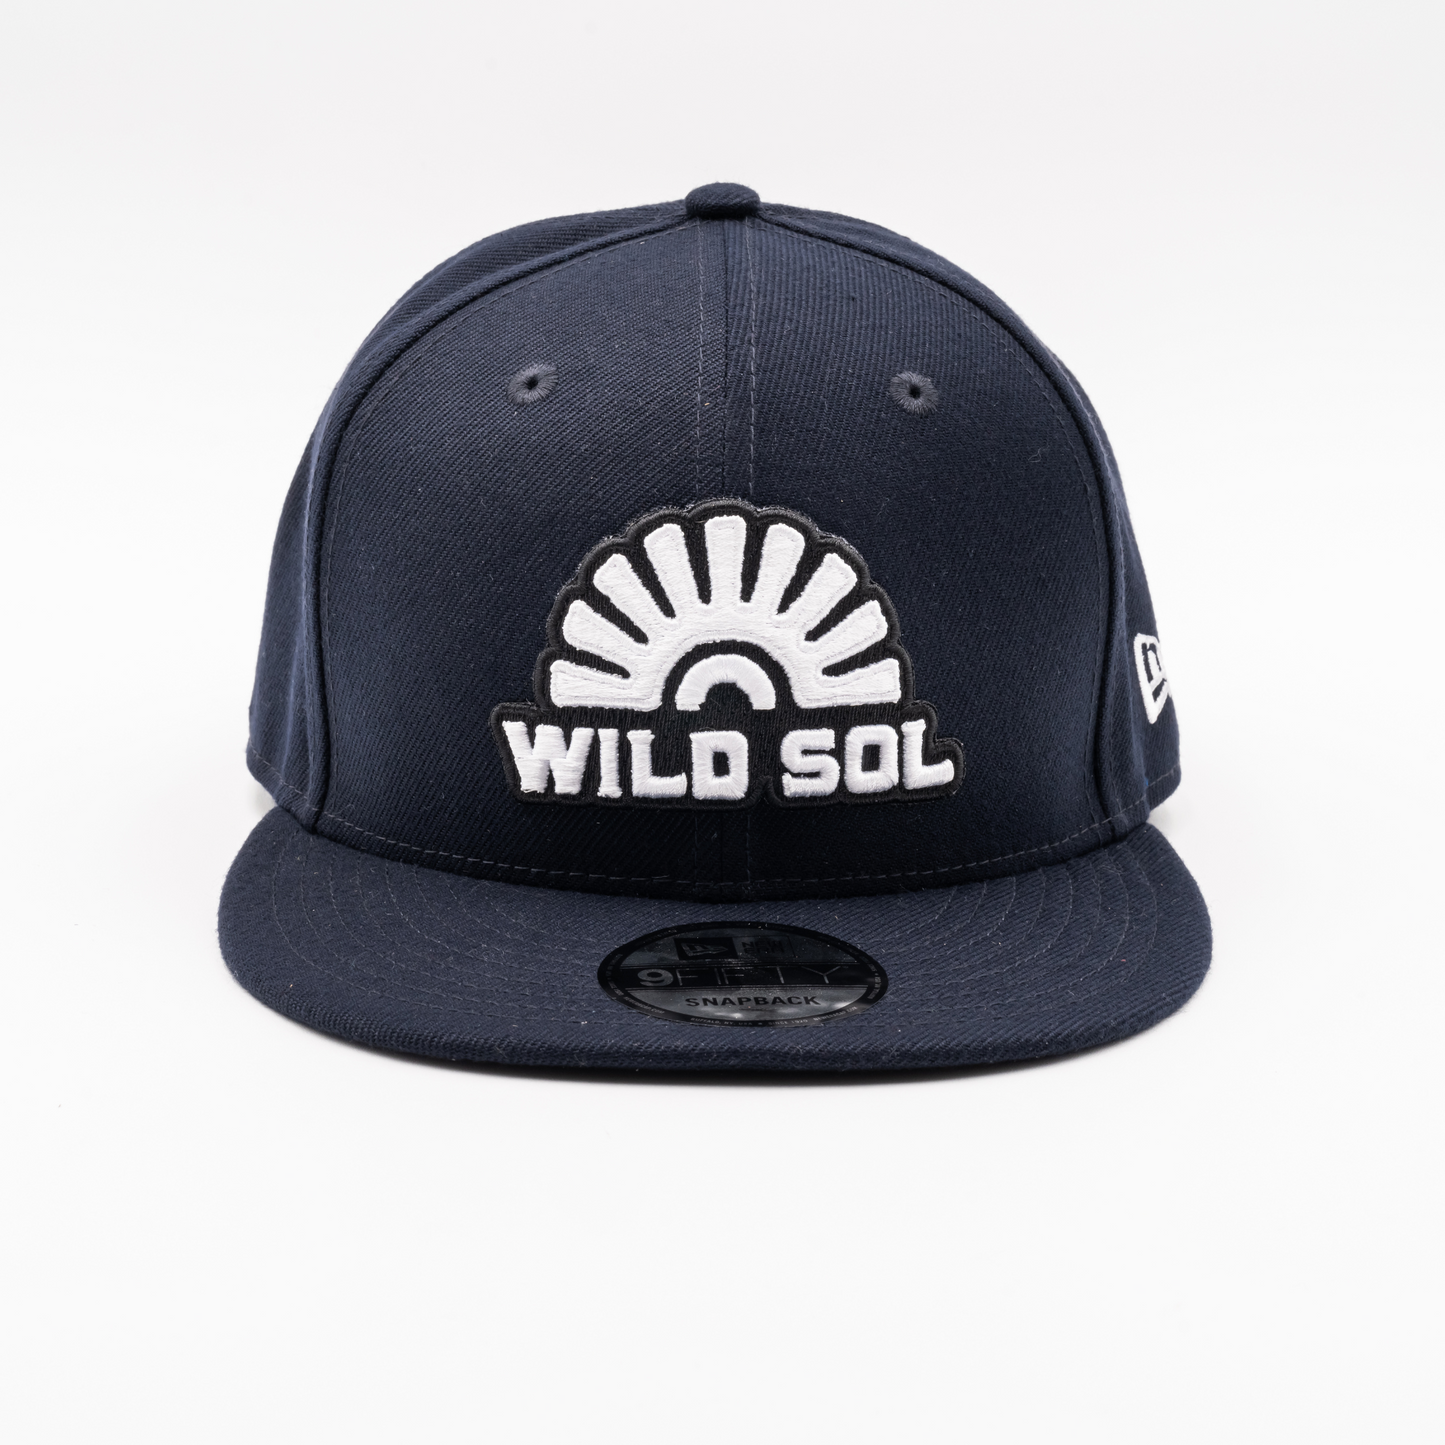 Wild Sol Navy New Era Hat